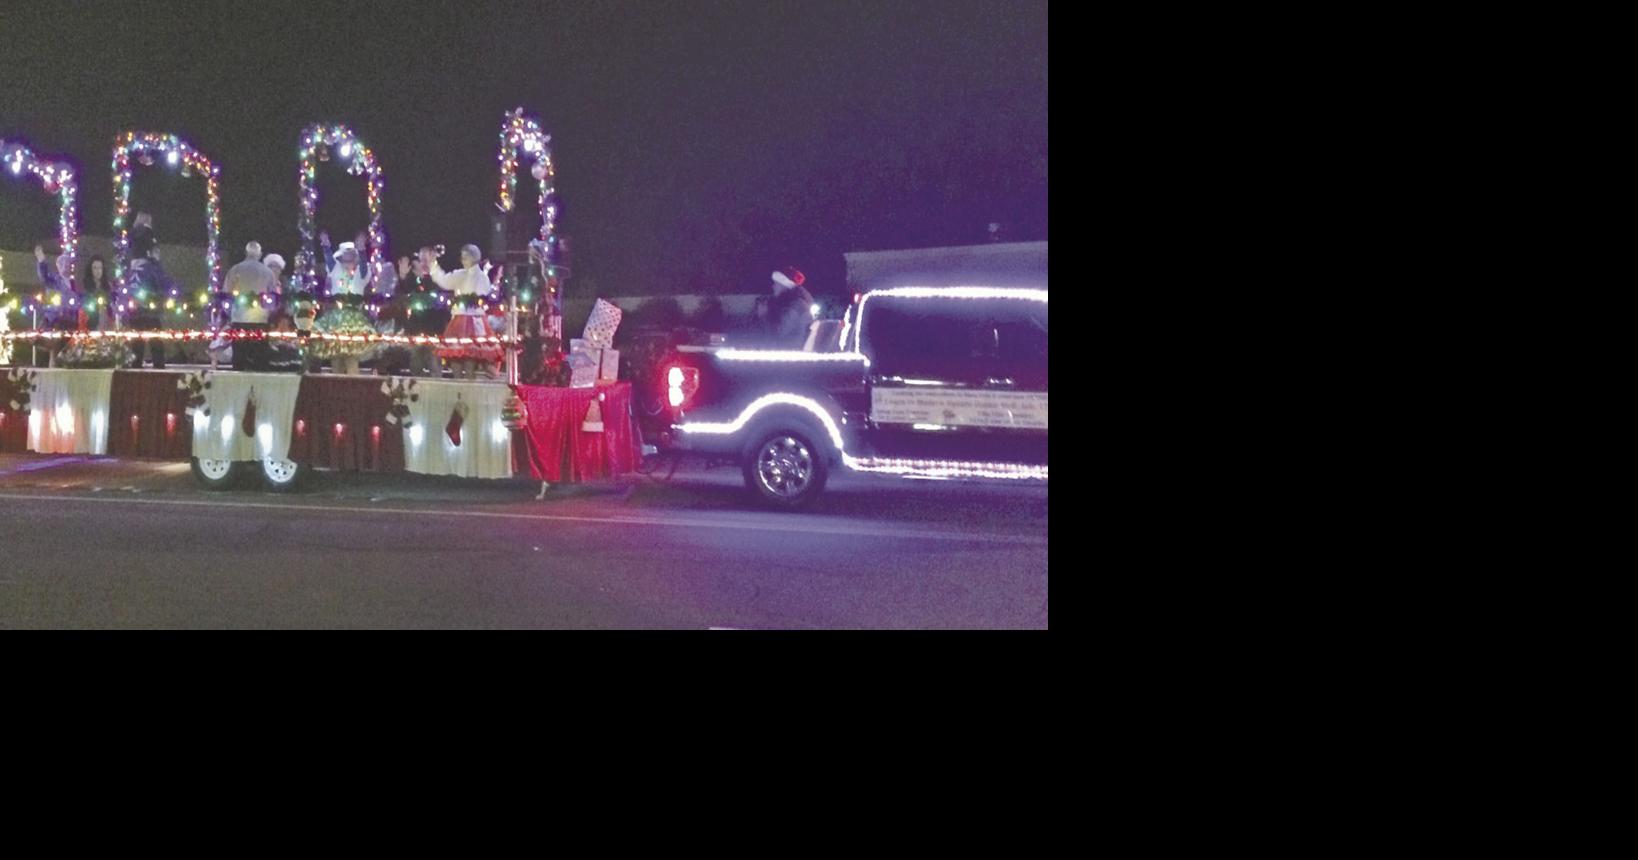 Christmas parade lights up Calimesa Local News